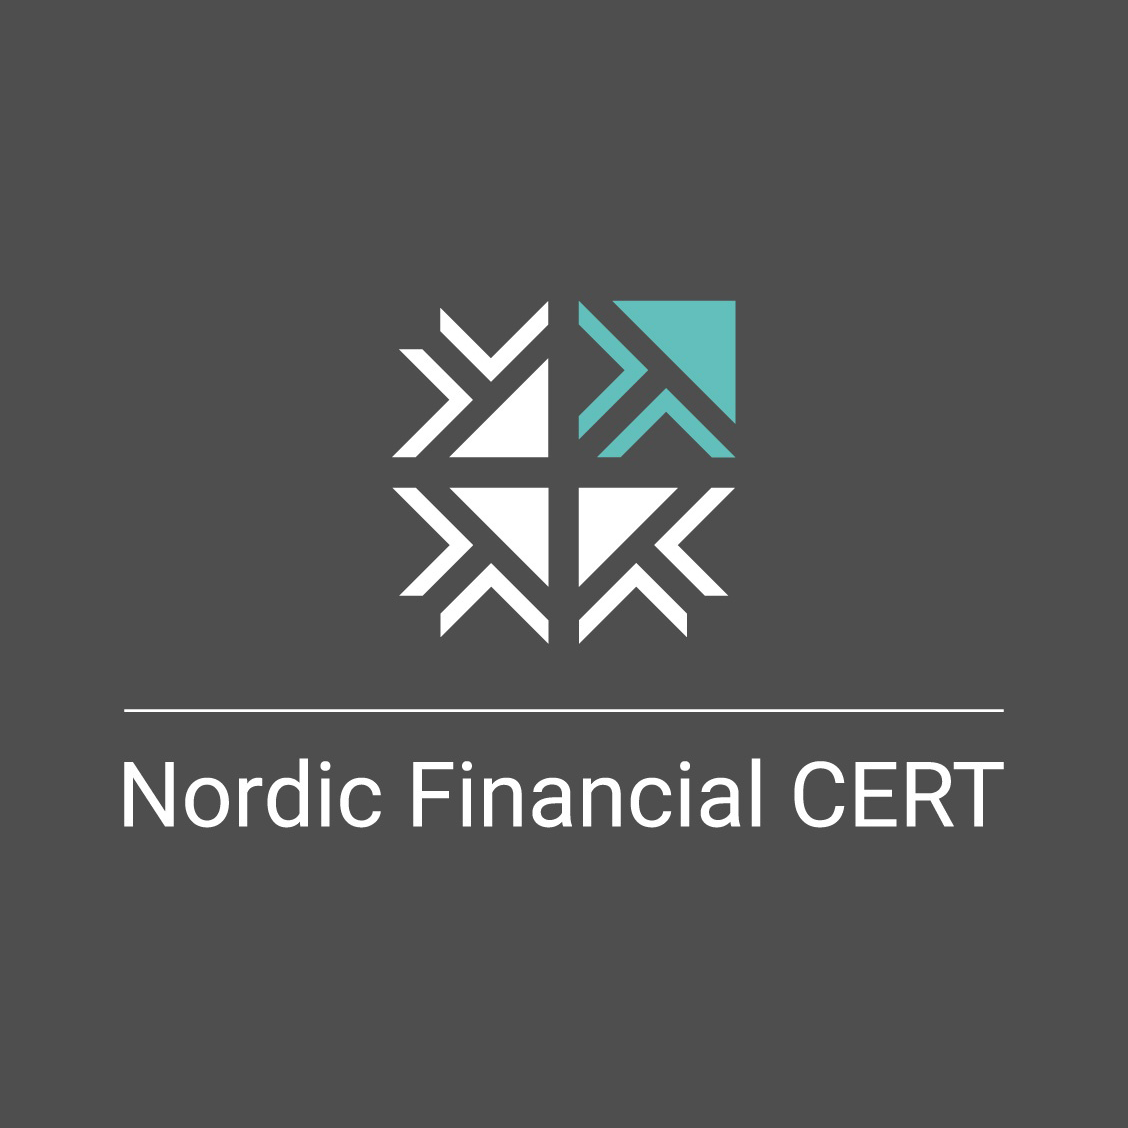 Nordic Financial CERT